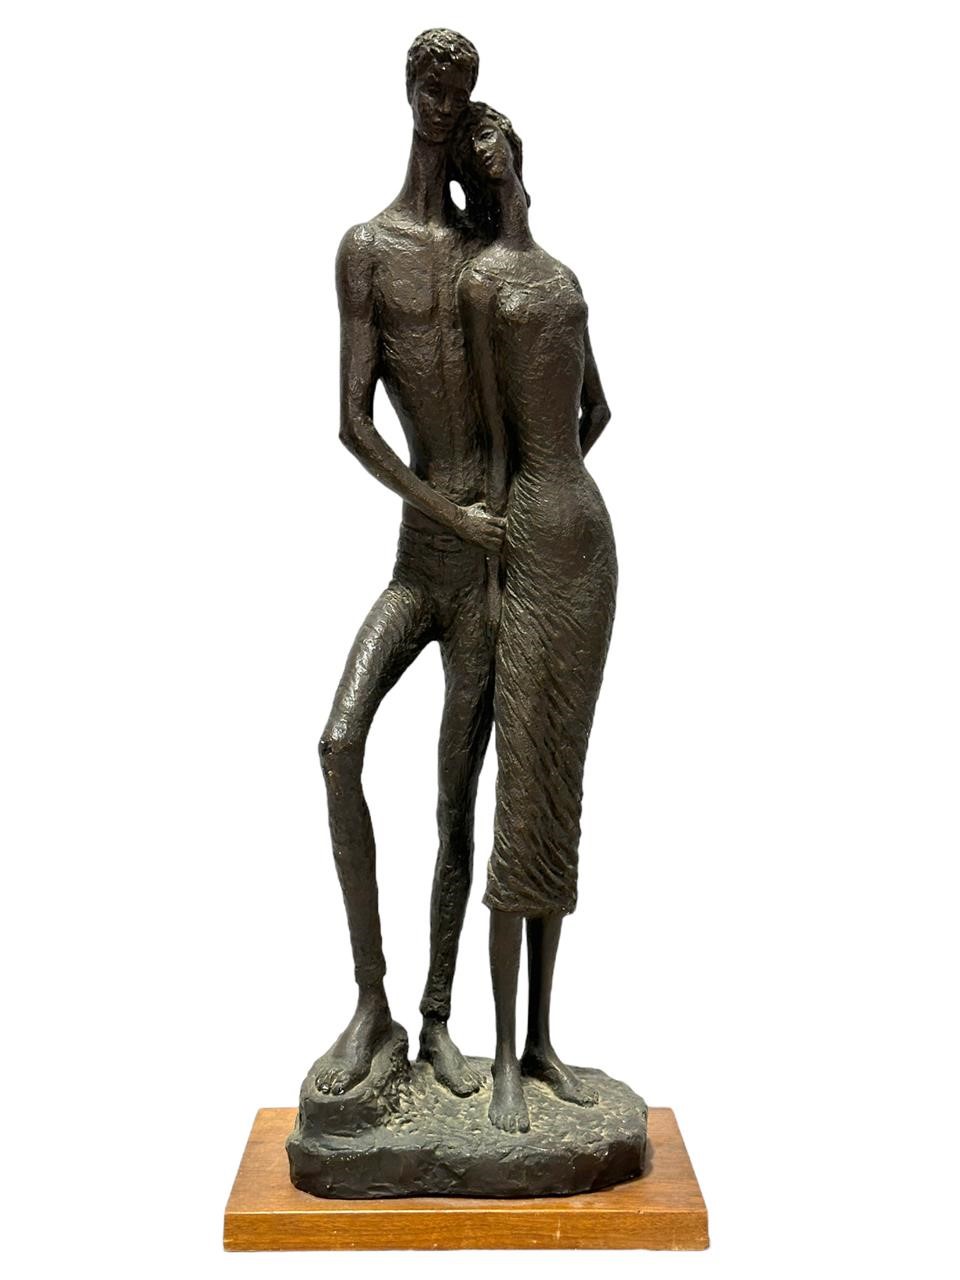 1962 Austin Productions Metal Couple's Sculpture